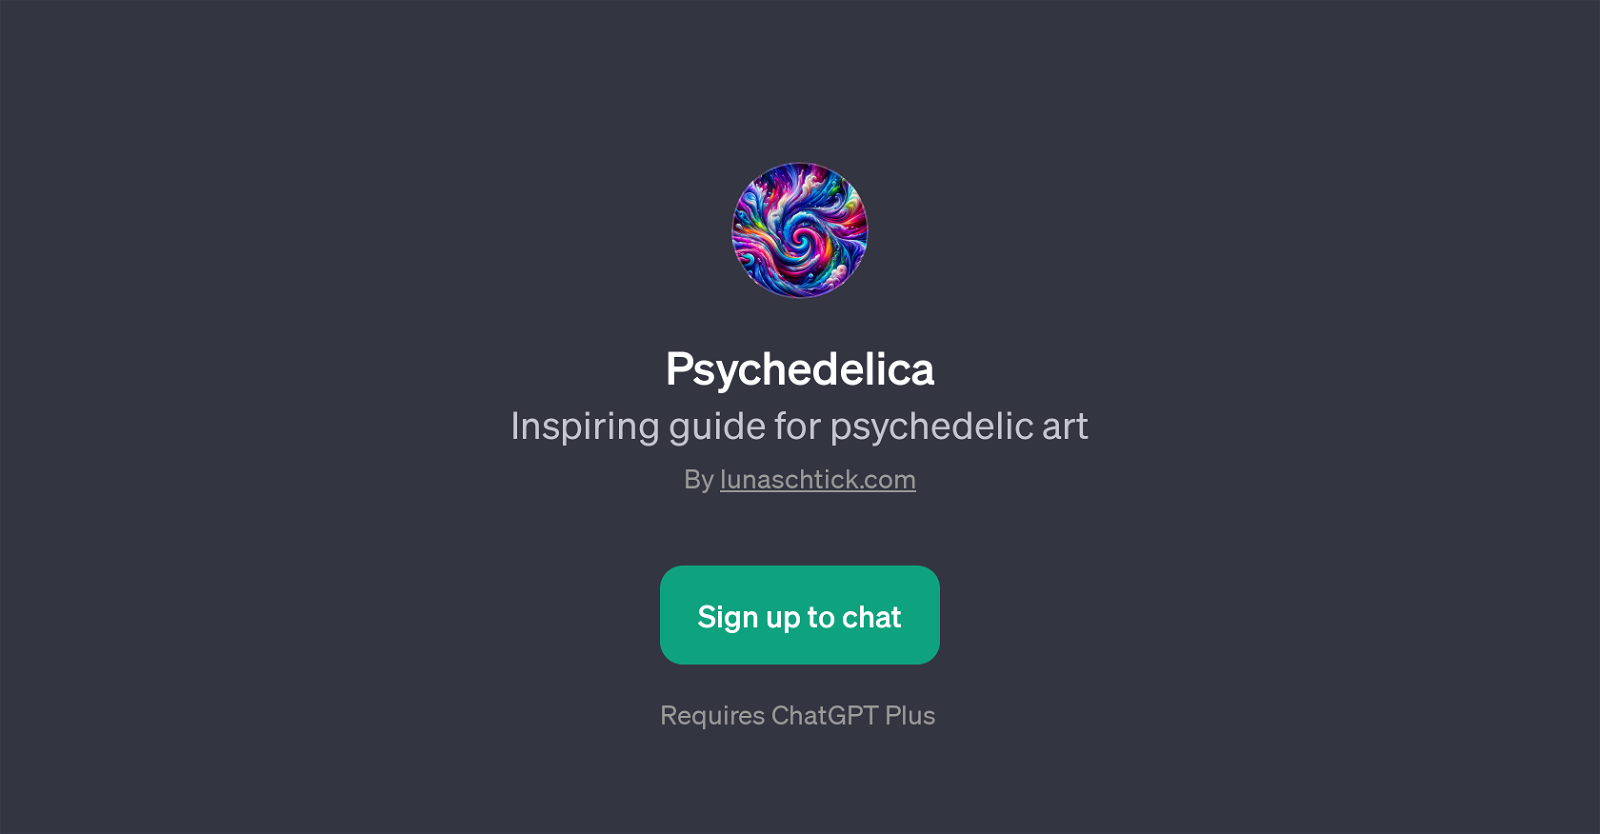 Psychedelica website